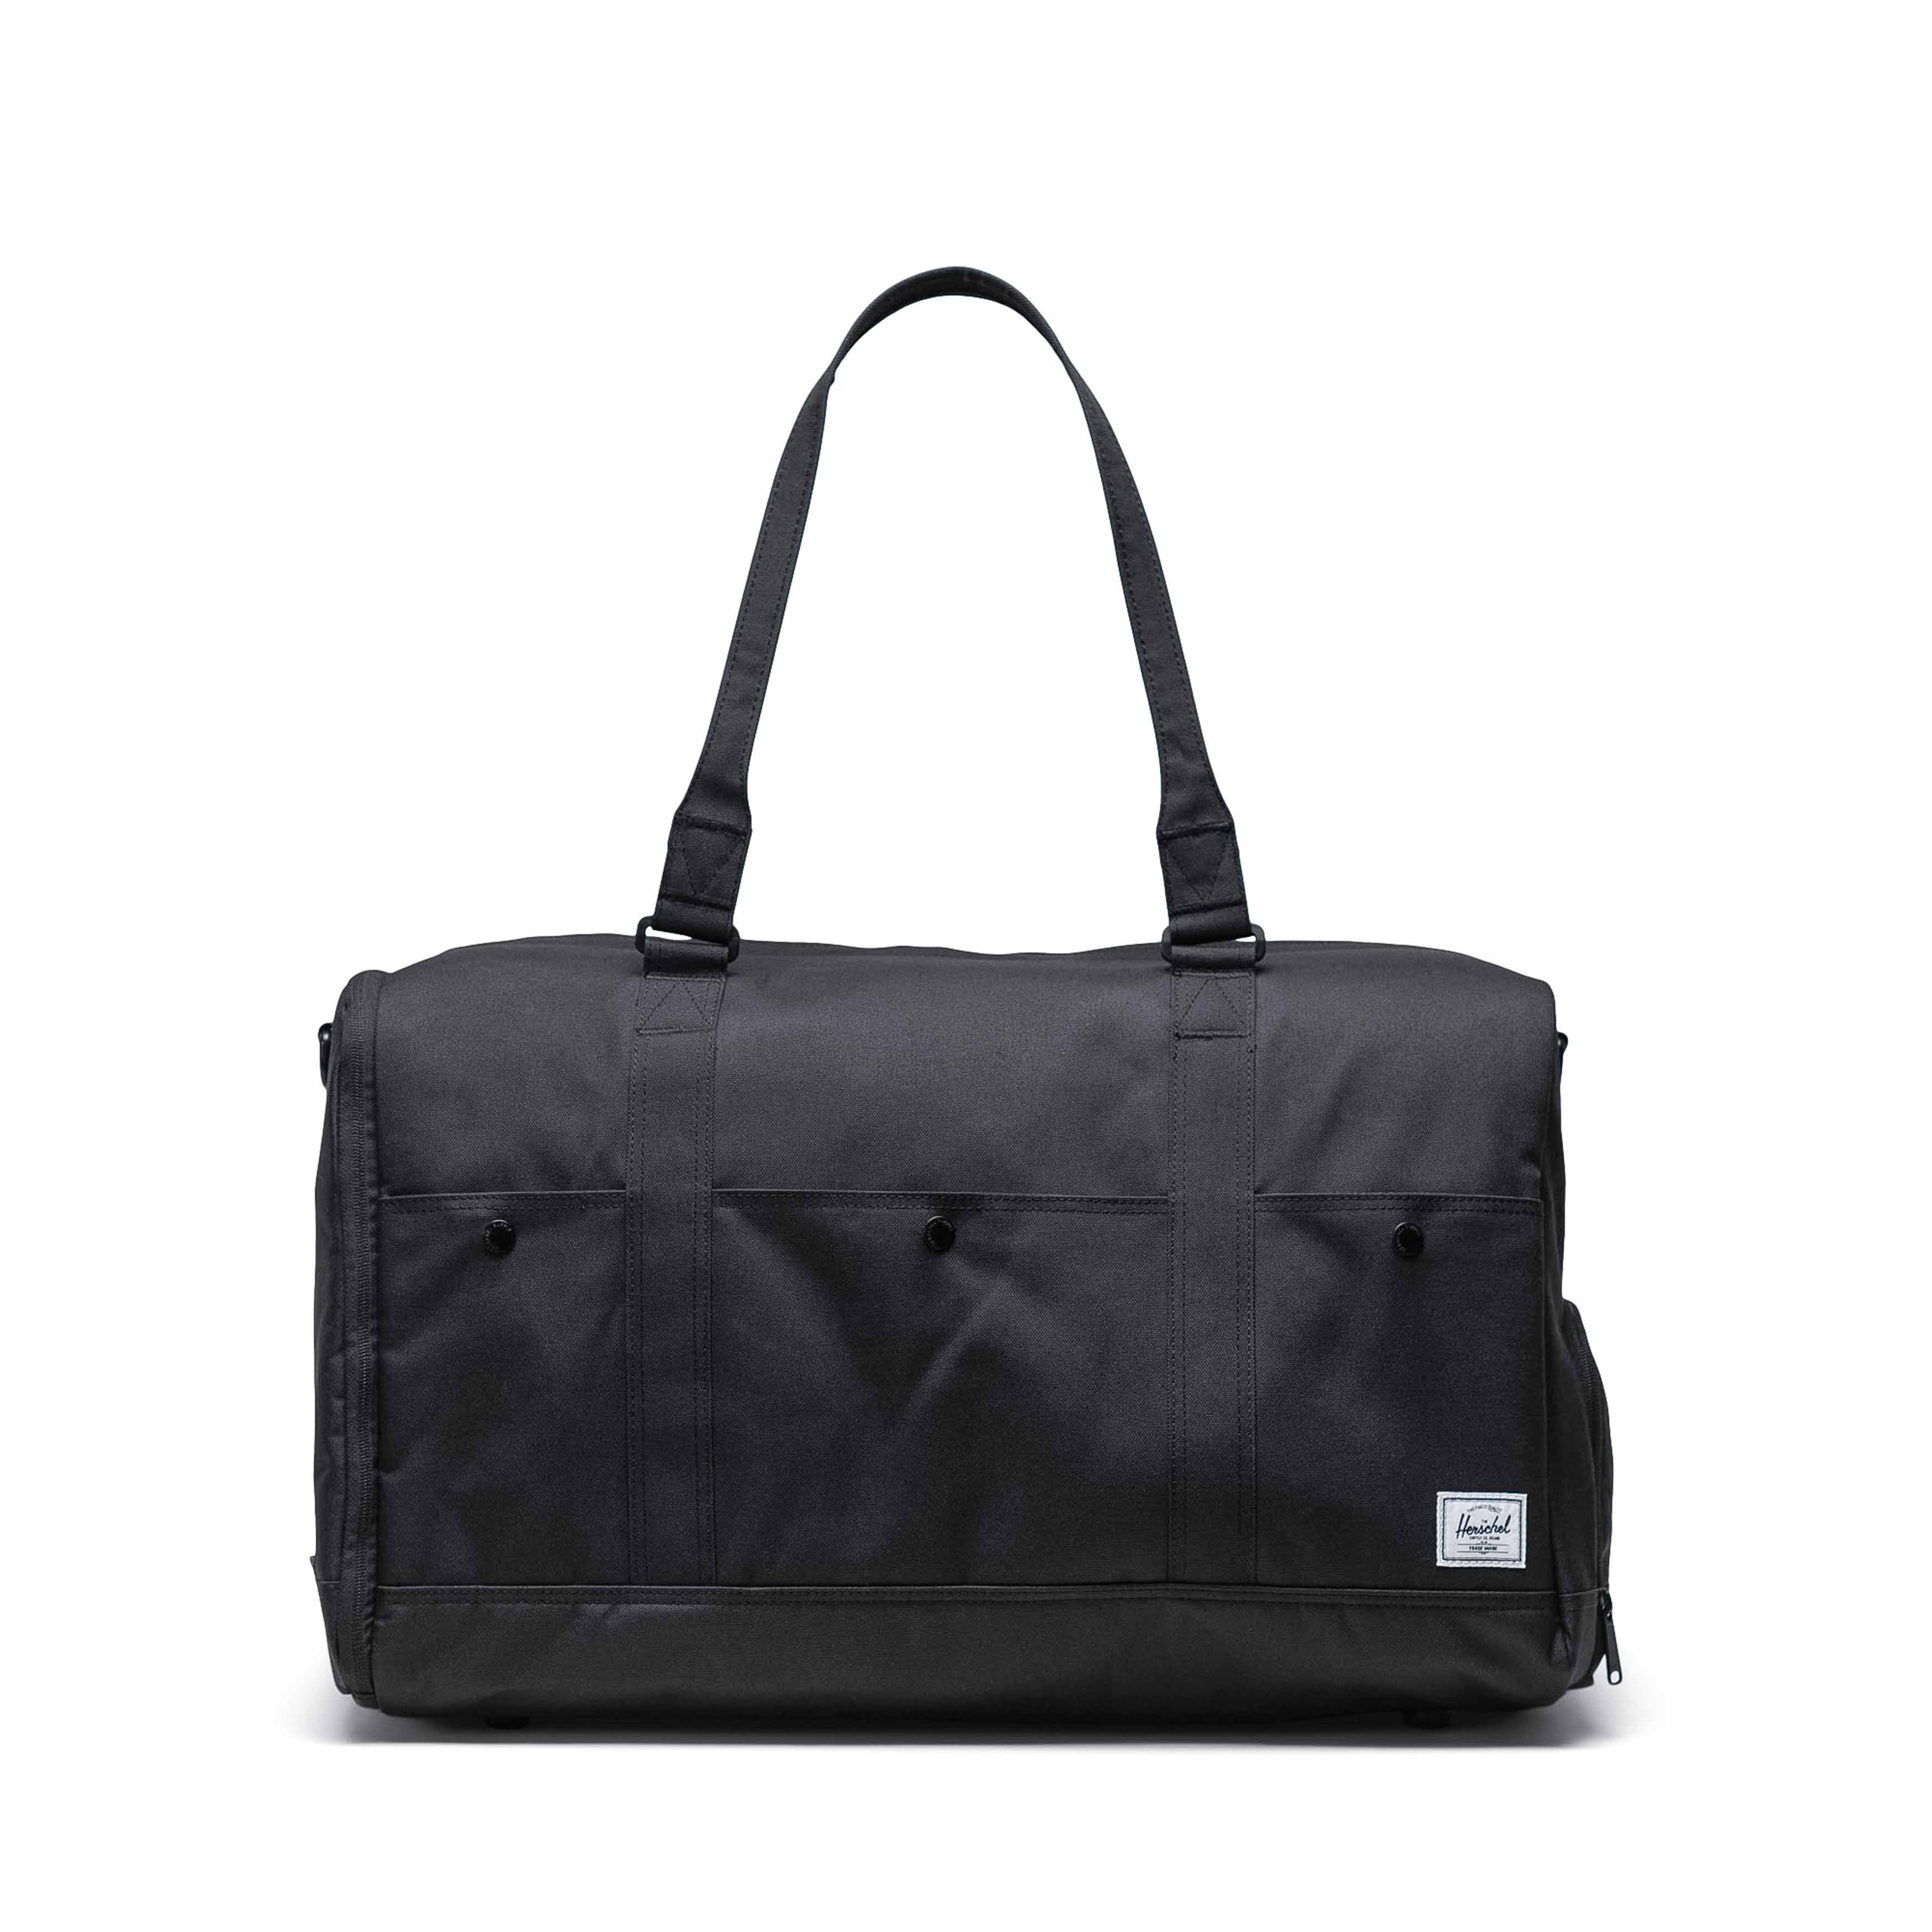 Bennett Duffle Bag 50L | Herschel Supply Co.